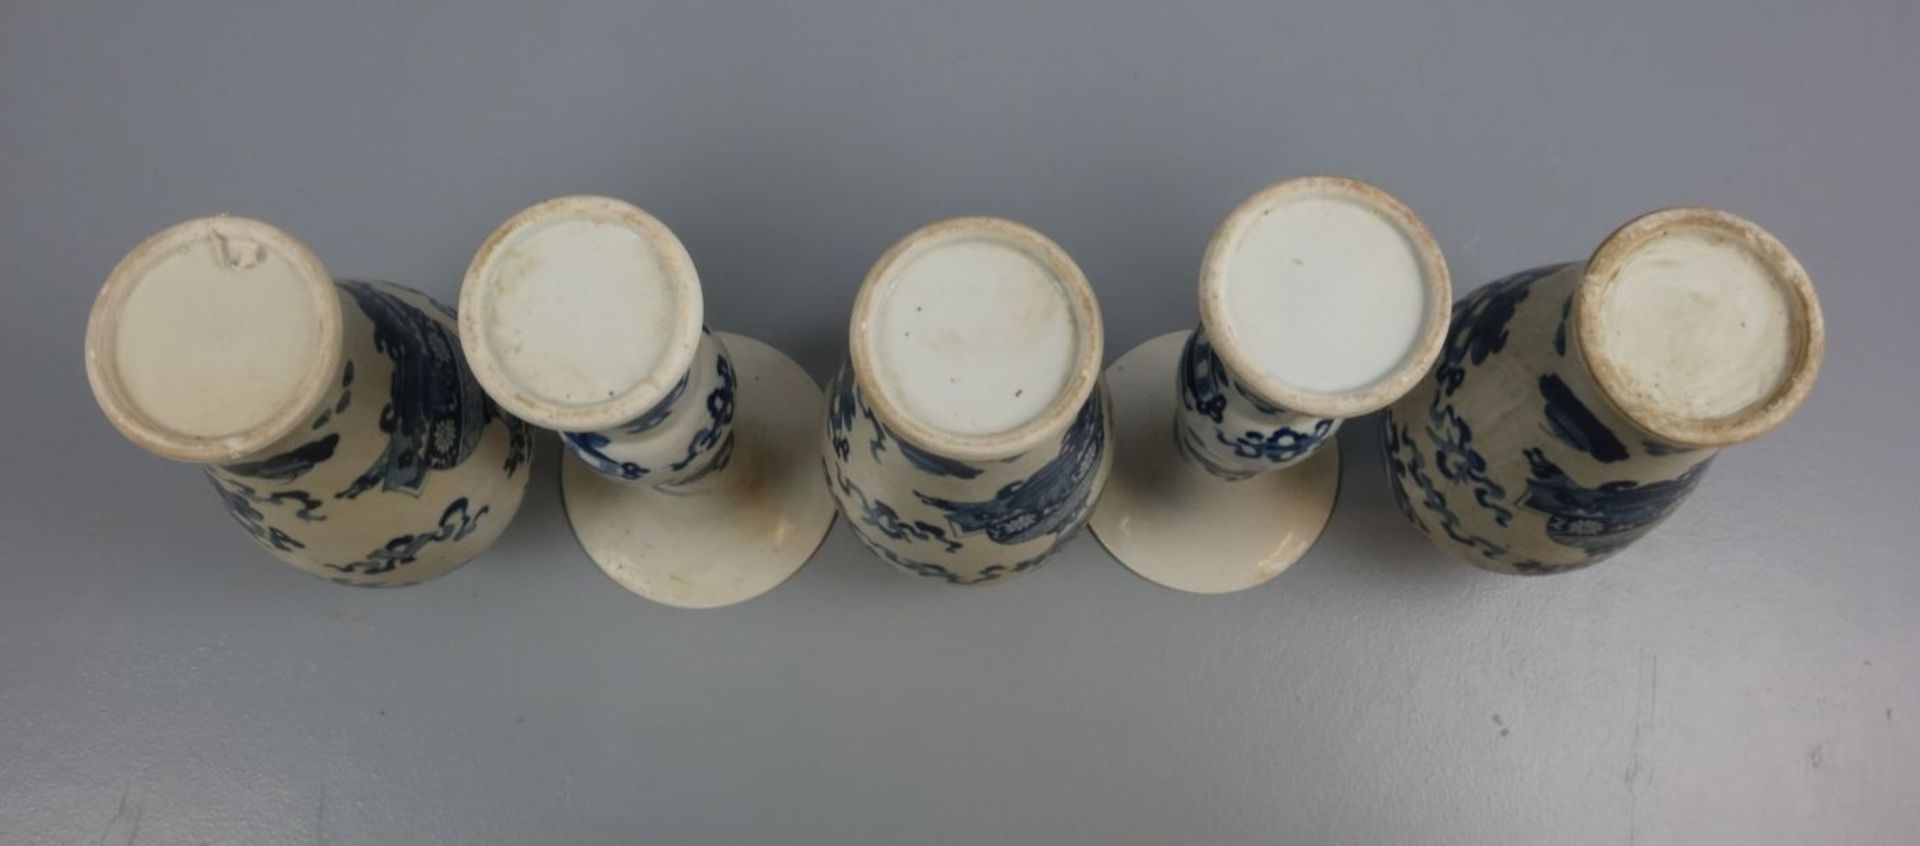 SET VON 5 CHINESISCHEN VASEN / set of 5 chinese vases, Porzellan, China, ungemarkt. Weißgraue Glasur - Image 5 of 5